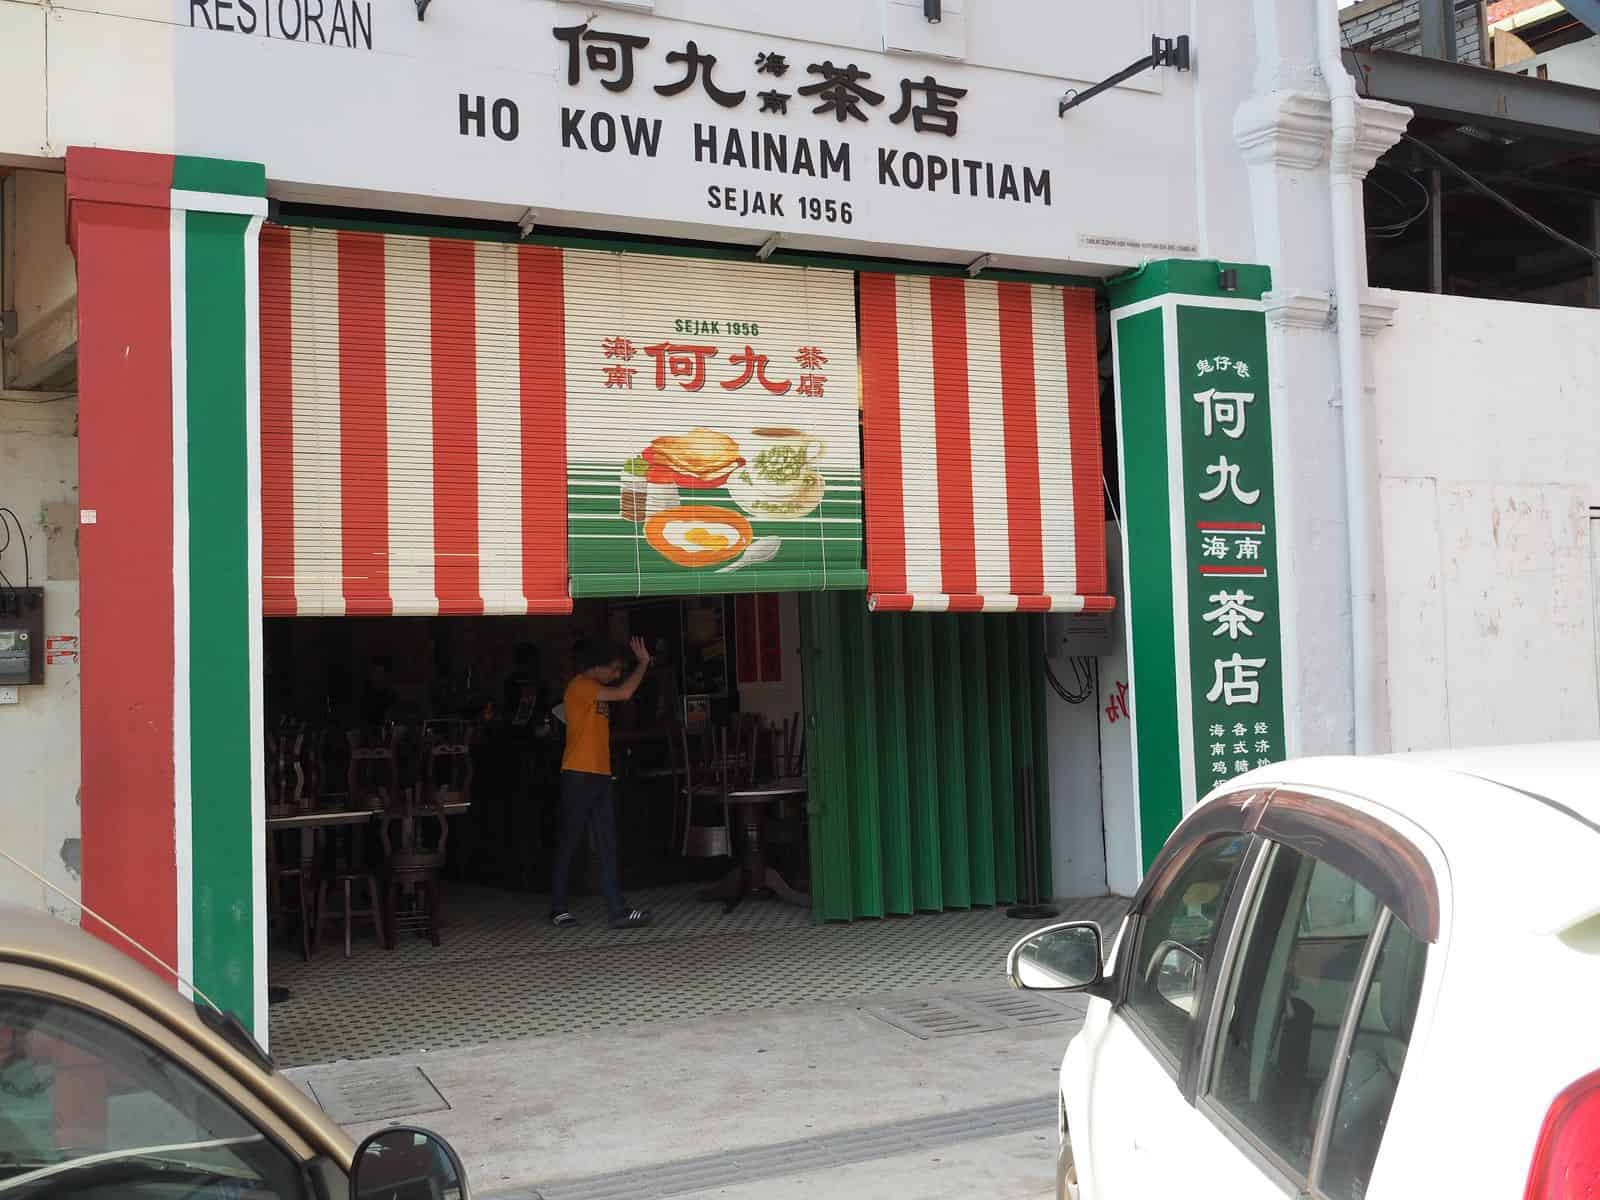 best-Malaysian-foods-to-try-in-Kuala-Lumpur-Chinatown-Ho-Kow-Hainam-Kopitiam-Travel-Mermaid 05